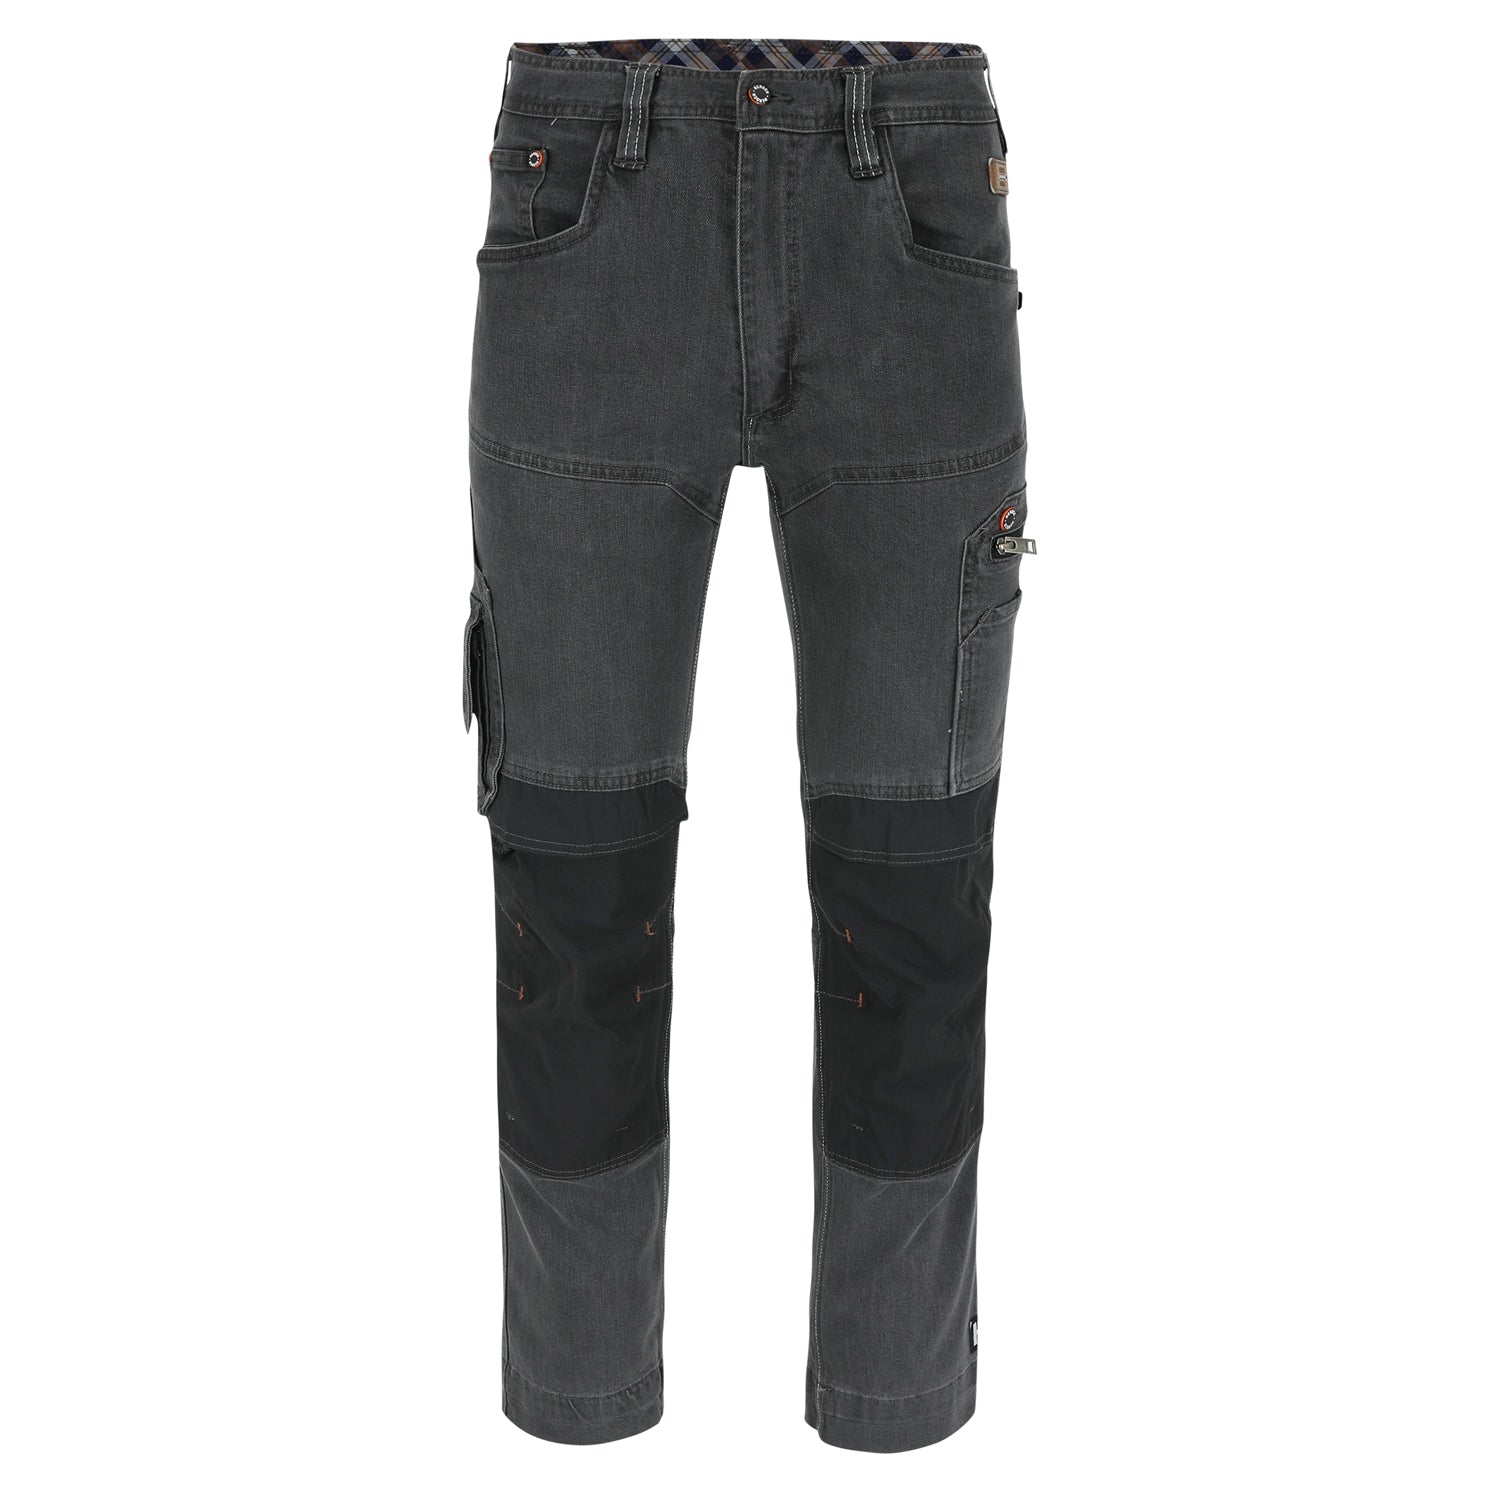 Herock Sphinx Stretch jeansbroek in de kleur jeans grijs